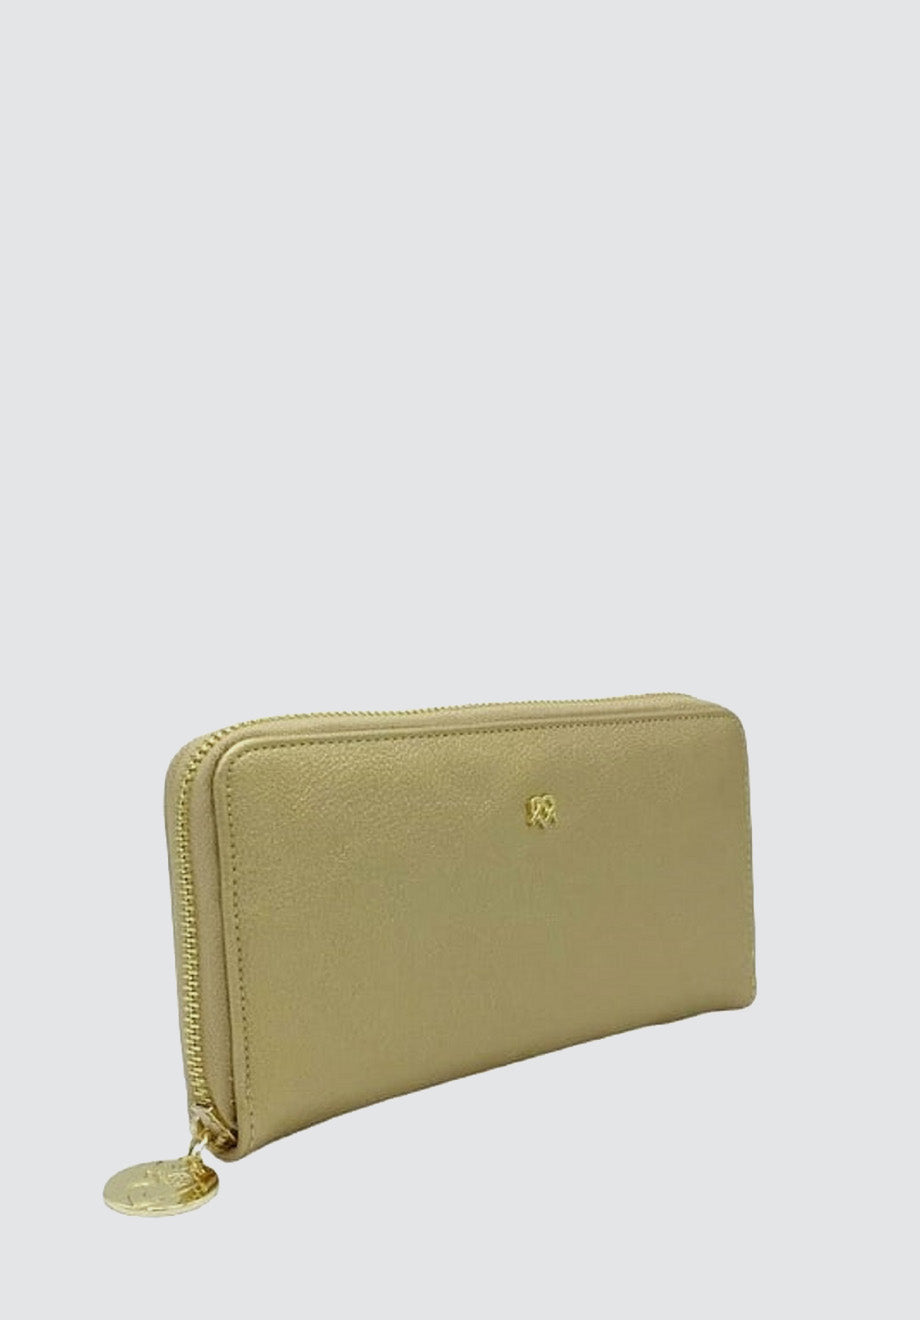 Uptown | Gold Zipper Wallet